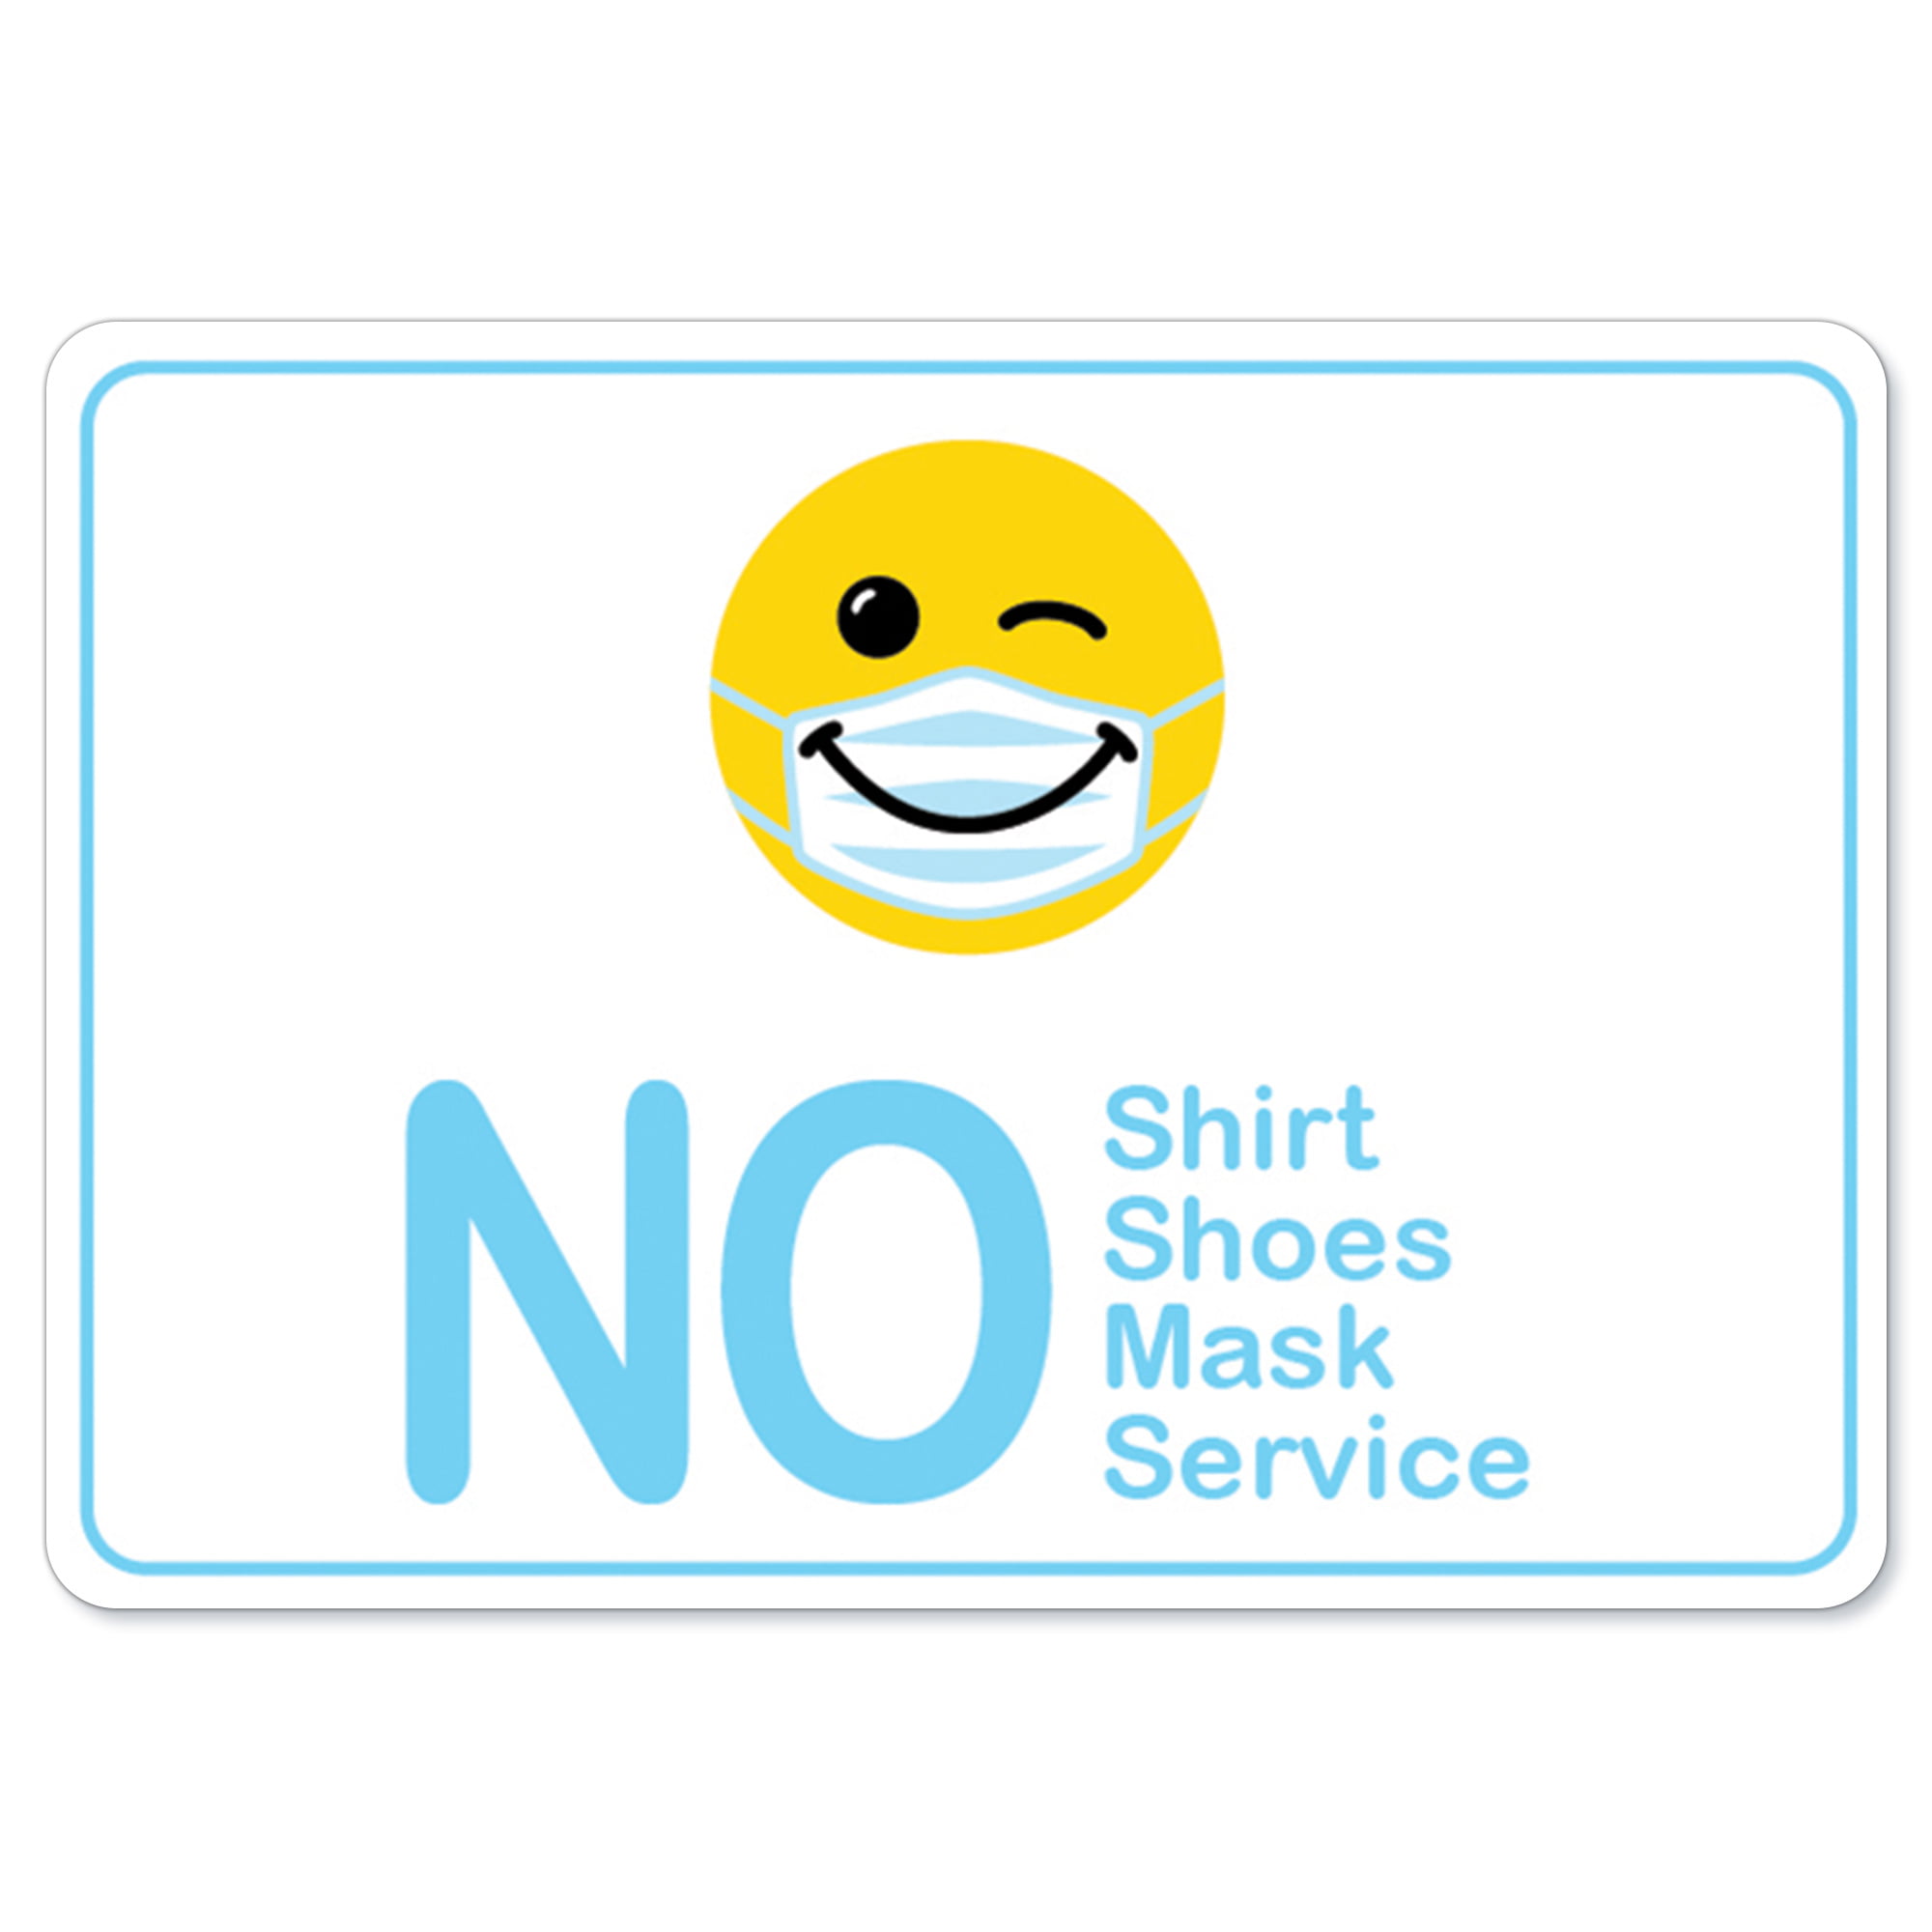 Medium Signs ByLITA Basic No Shoes No Shirt No Service Sign Black Gold